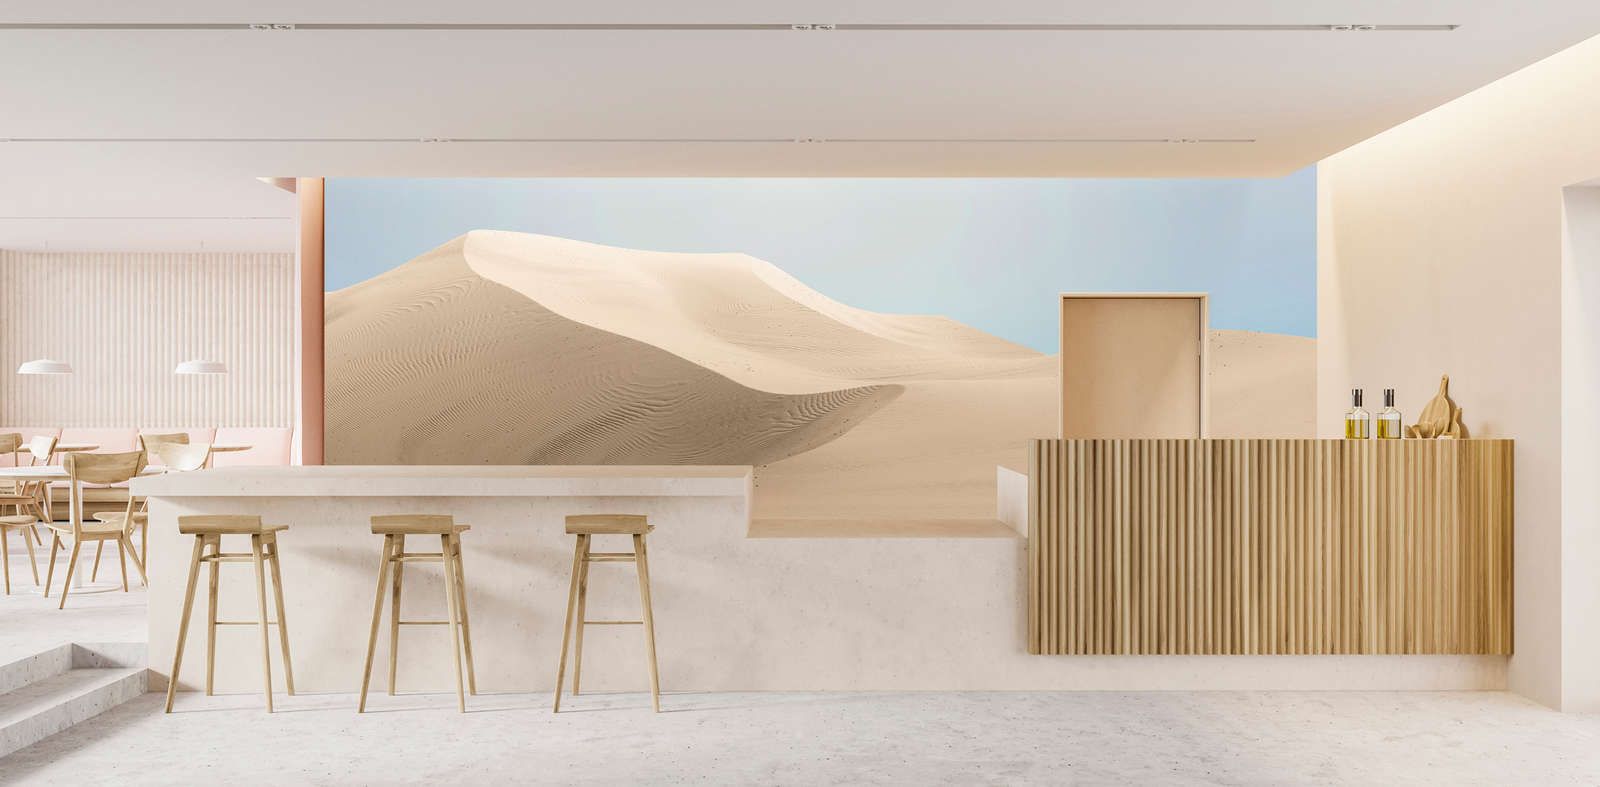             Fotomural »dunas« - paisaje desértico en colores pastel - tejido no tejido, liso y mate
        